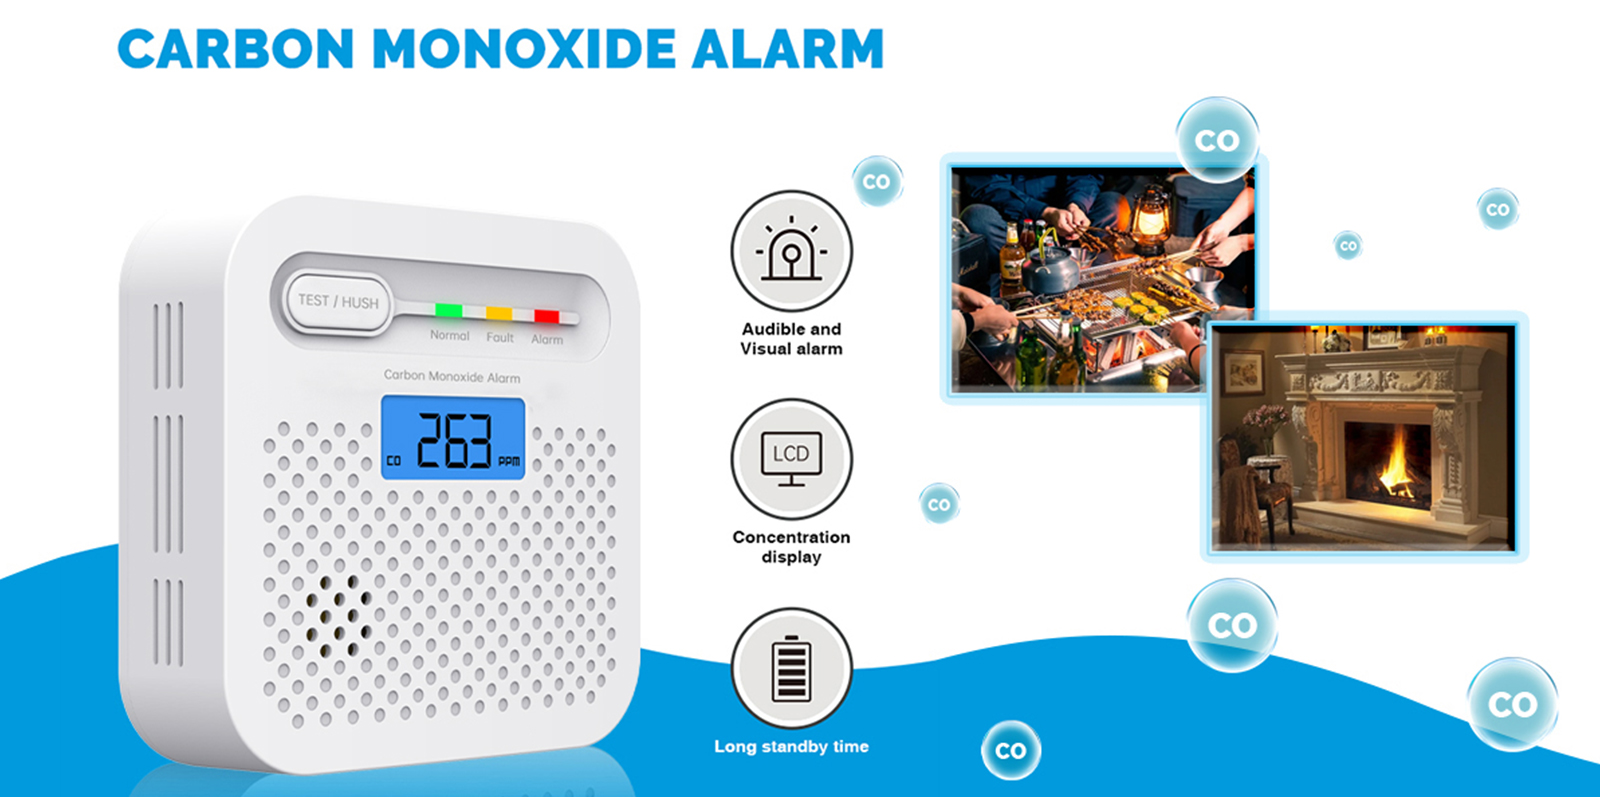 Bu karbon monoksit alarmı, karbon monoksiti hızlı bir şekilde algılayarak sizi ve ailenizi tehlikeden uzak tutar.